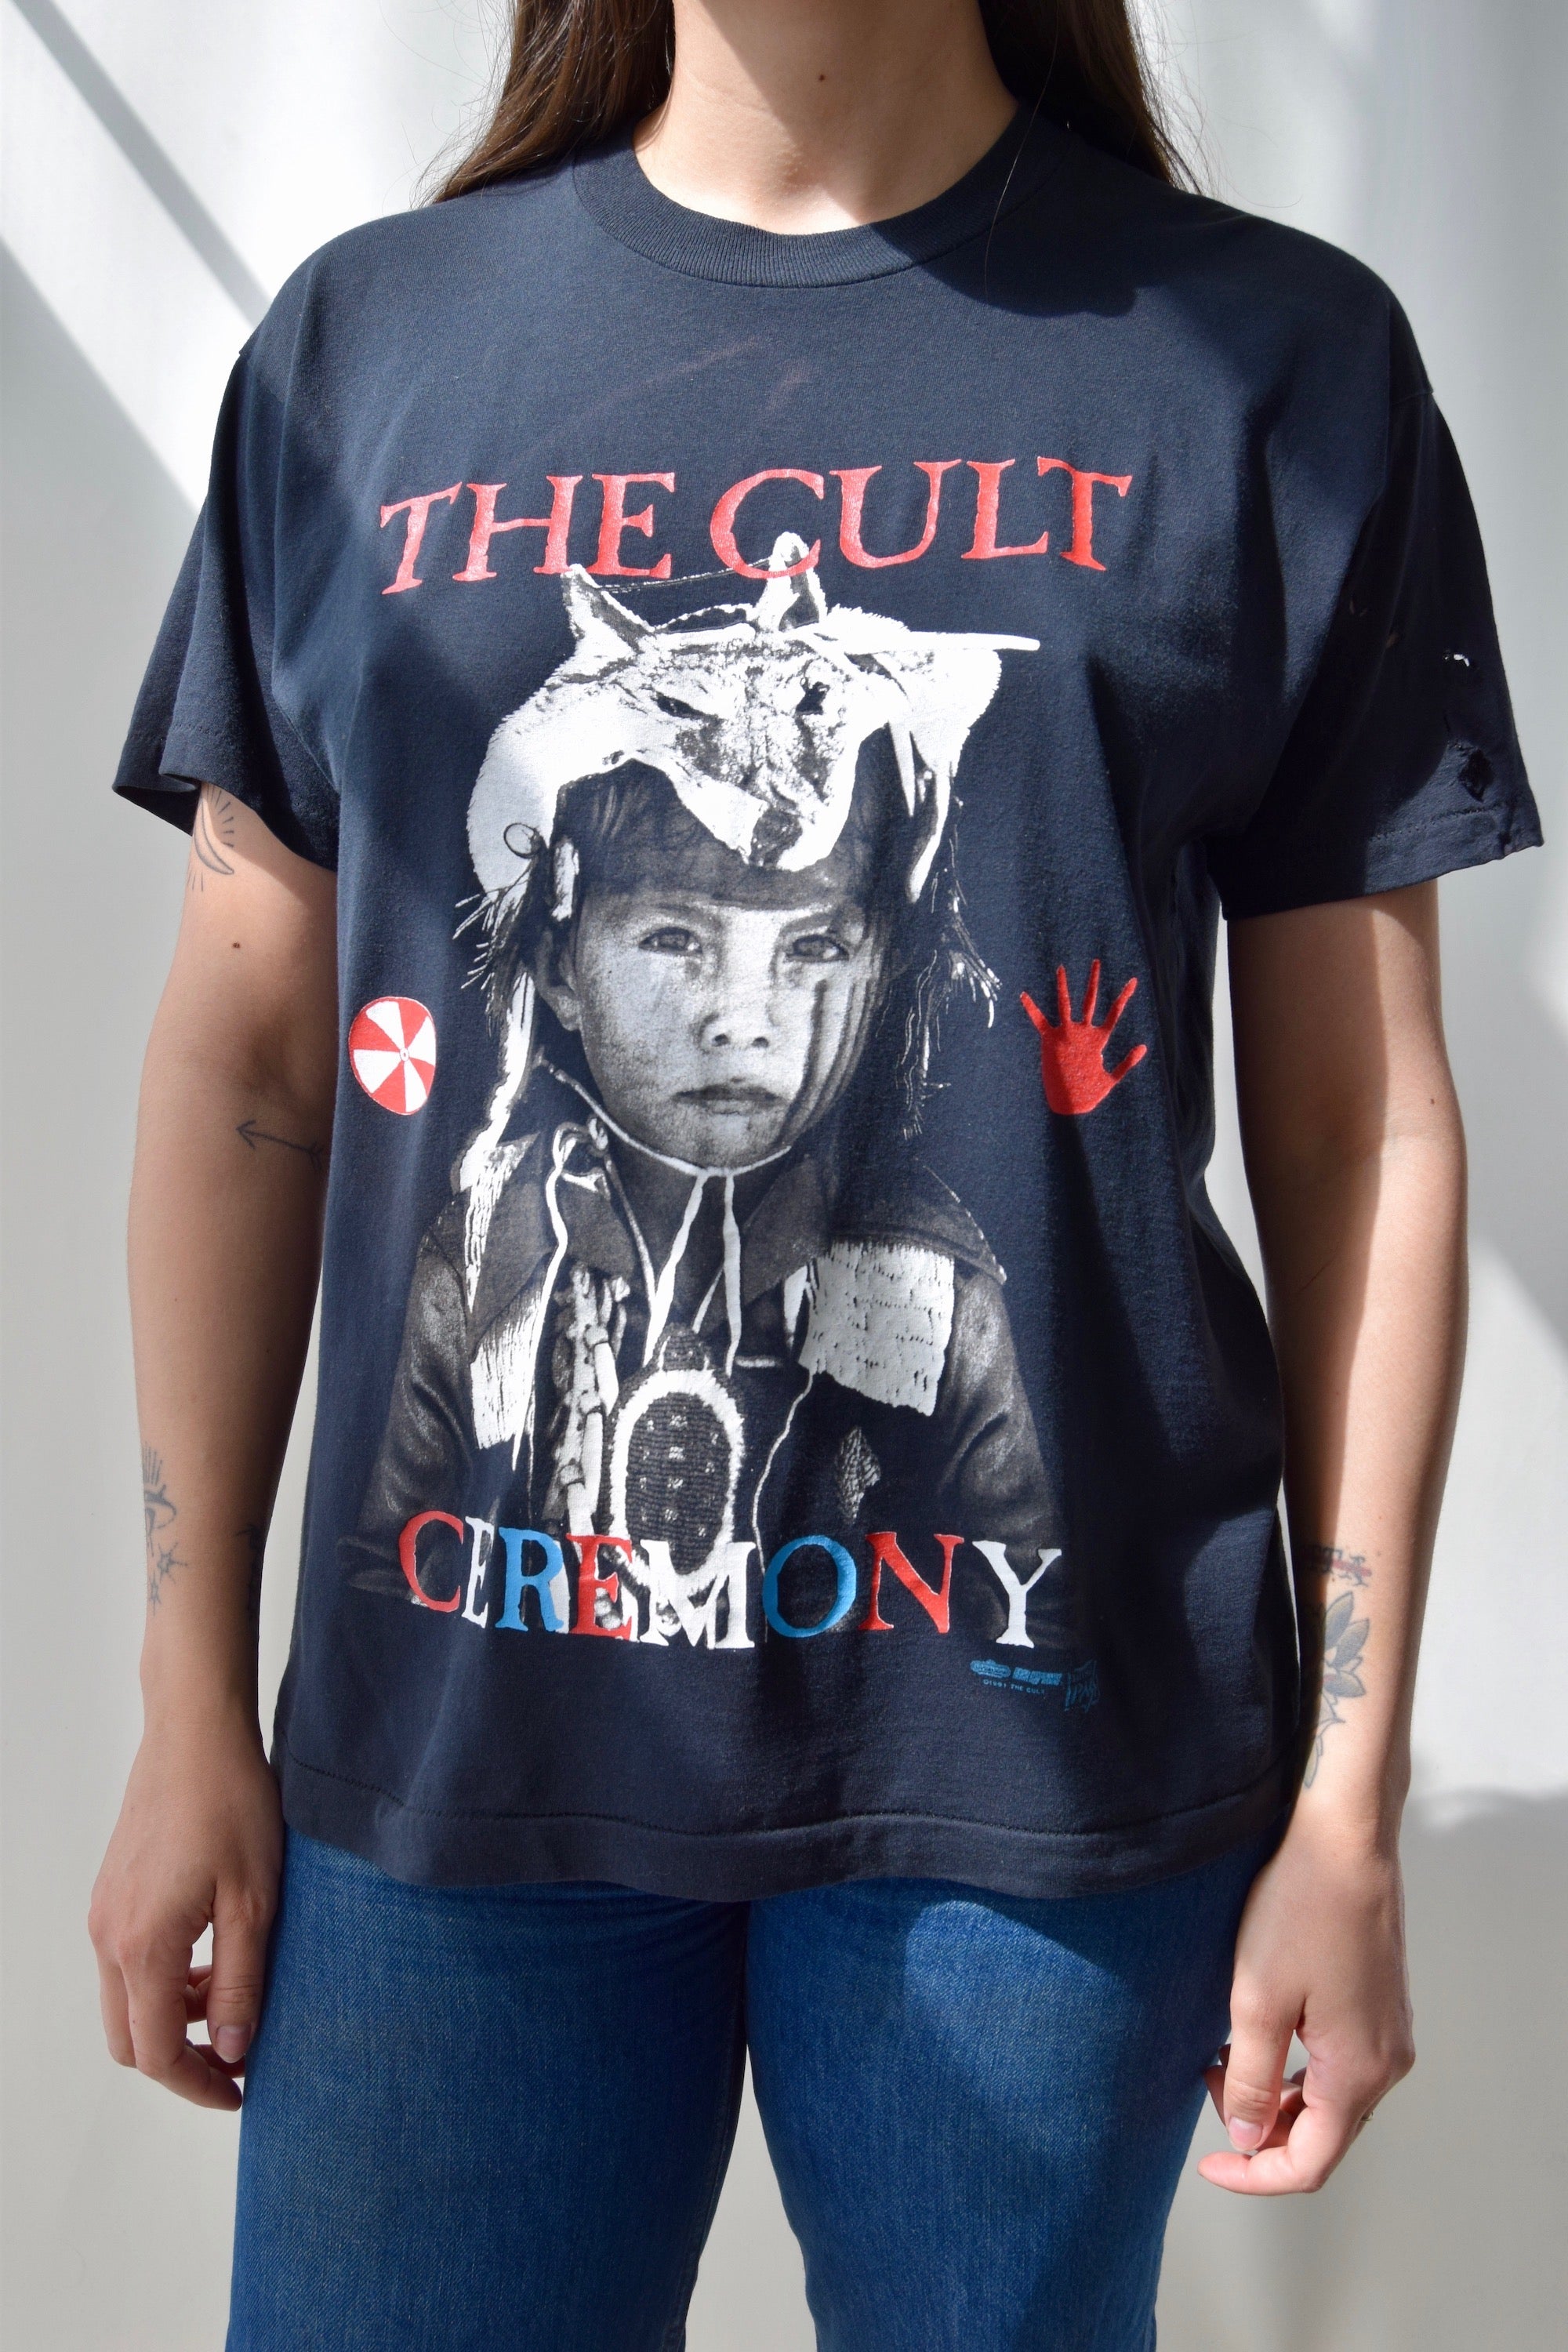 Vintage 1991 The Cult "Ceremony" Tour T-Shirt